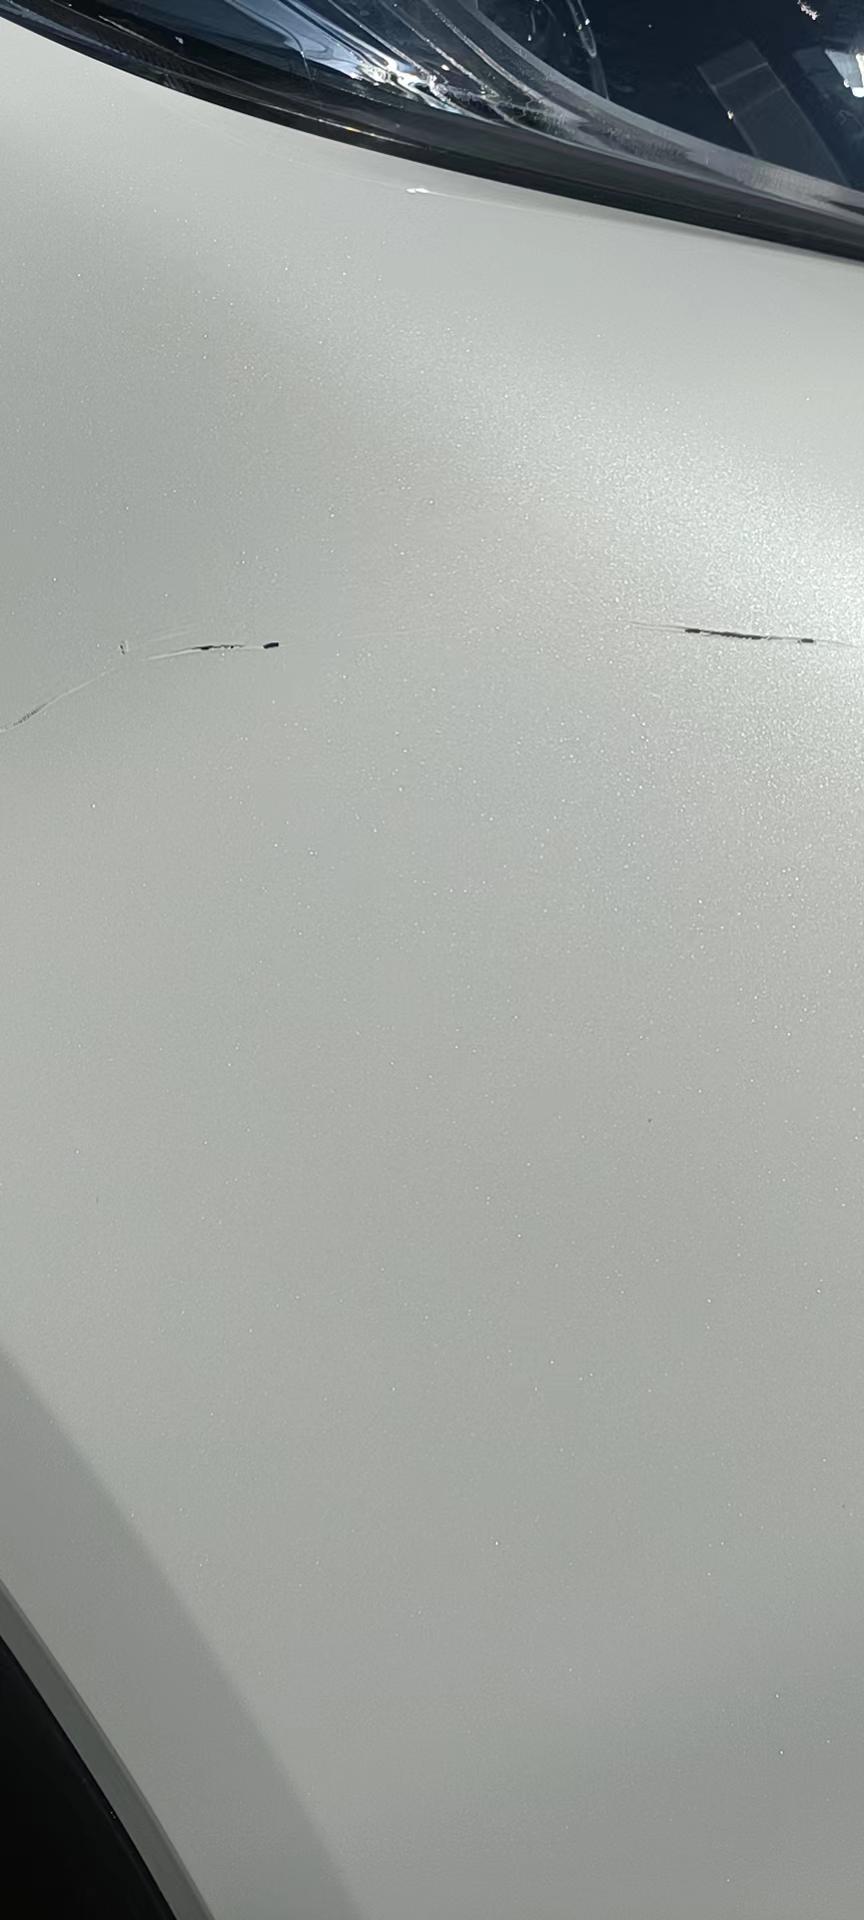 本田XR V 车子刮成这样还需要补漆吗？有的地方已经漏底漆了。修理店补漆能和原漆一样吗？